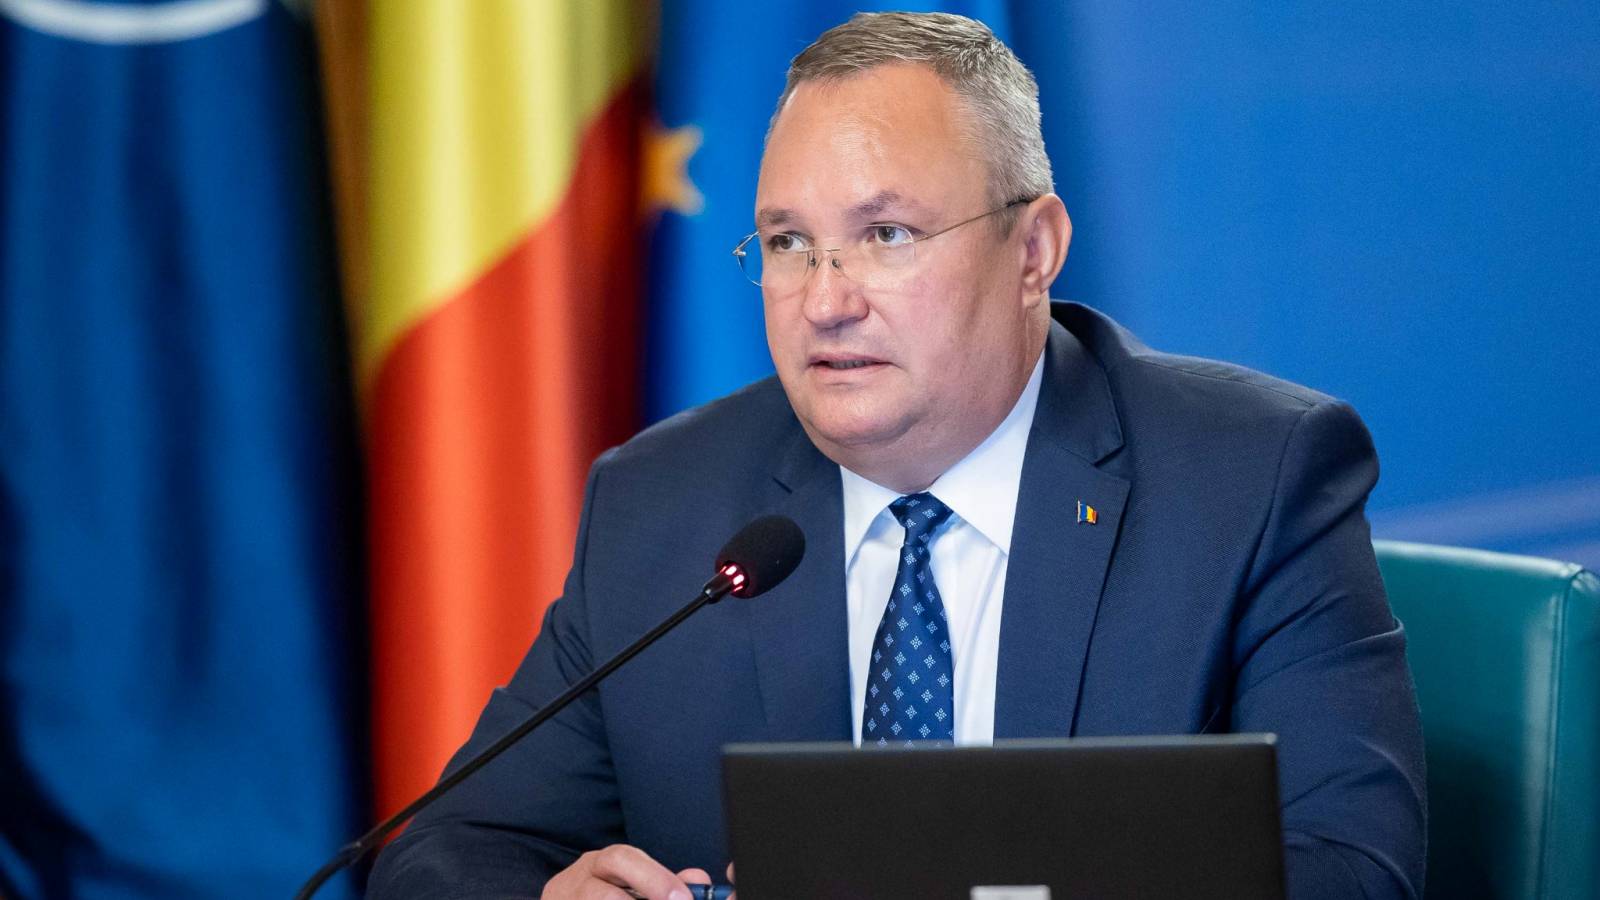 Nicolae Ciuca keskusteli strategisen kumppanuuden laajentamisesta Moldovan pääministerin kanssa